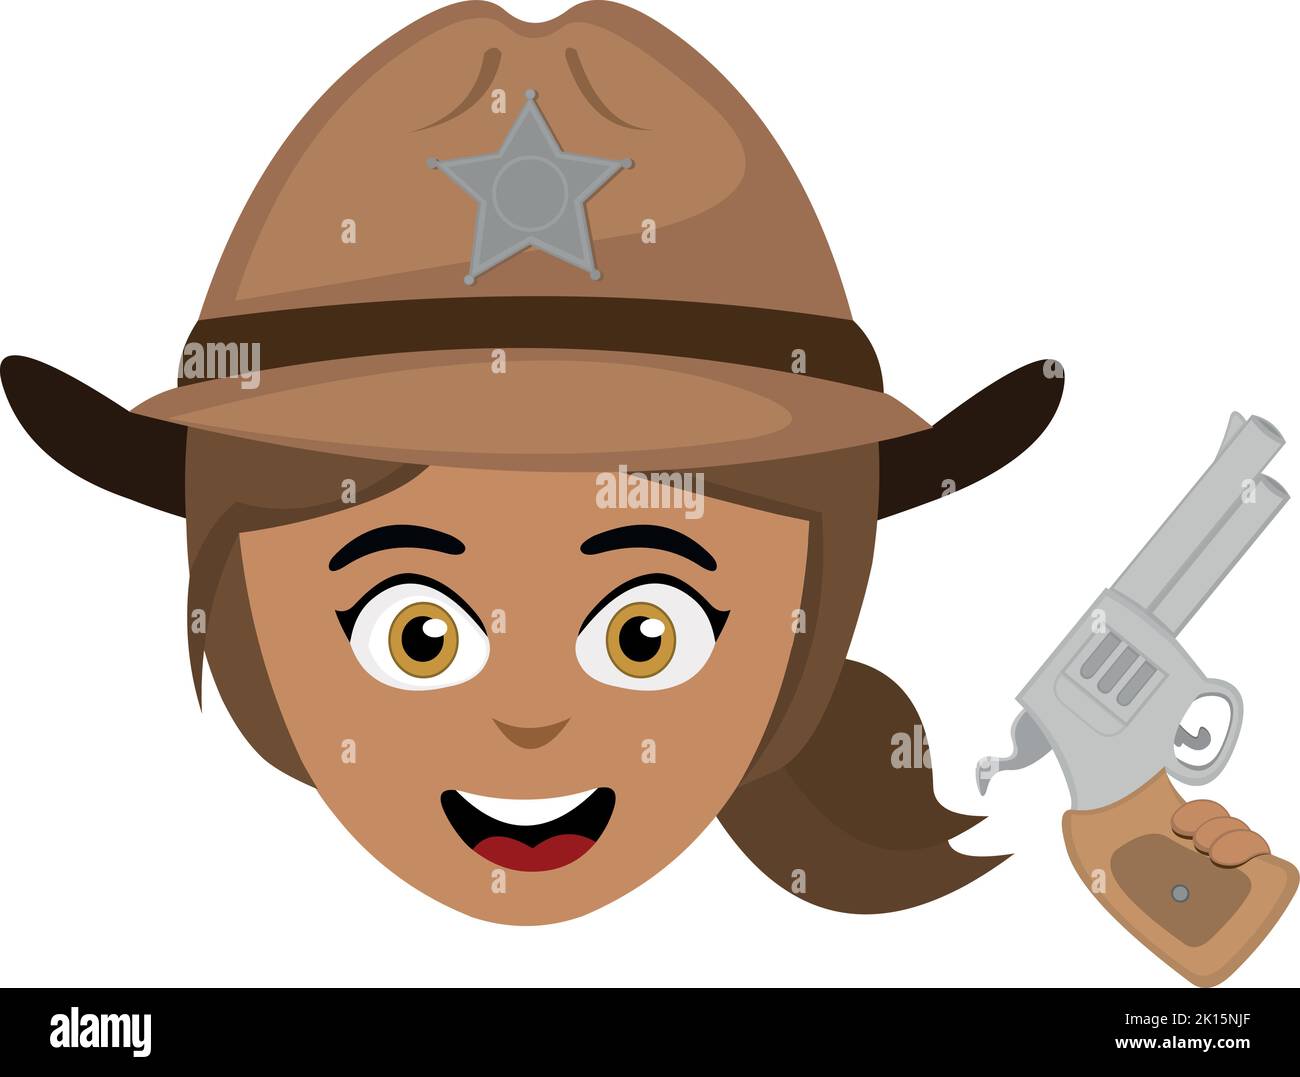 Vecteur émoticône illustration du visage d'une femme shérif de bande dessinée avec un chapeau et un fusil dans sa main Illustration de Vecteur